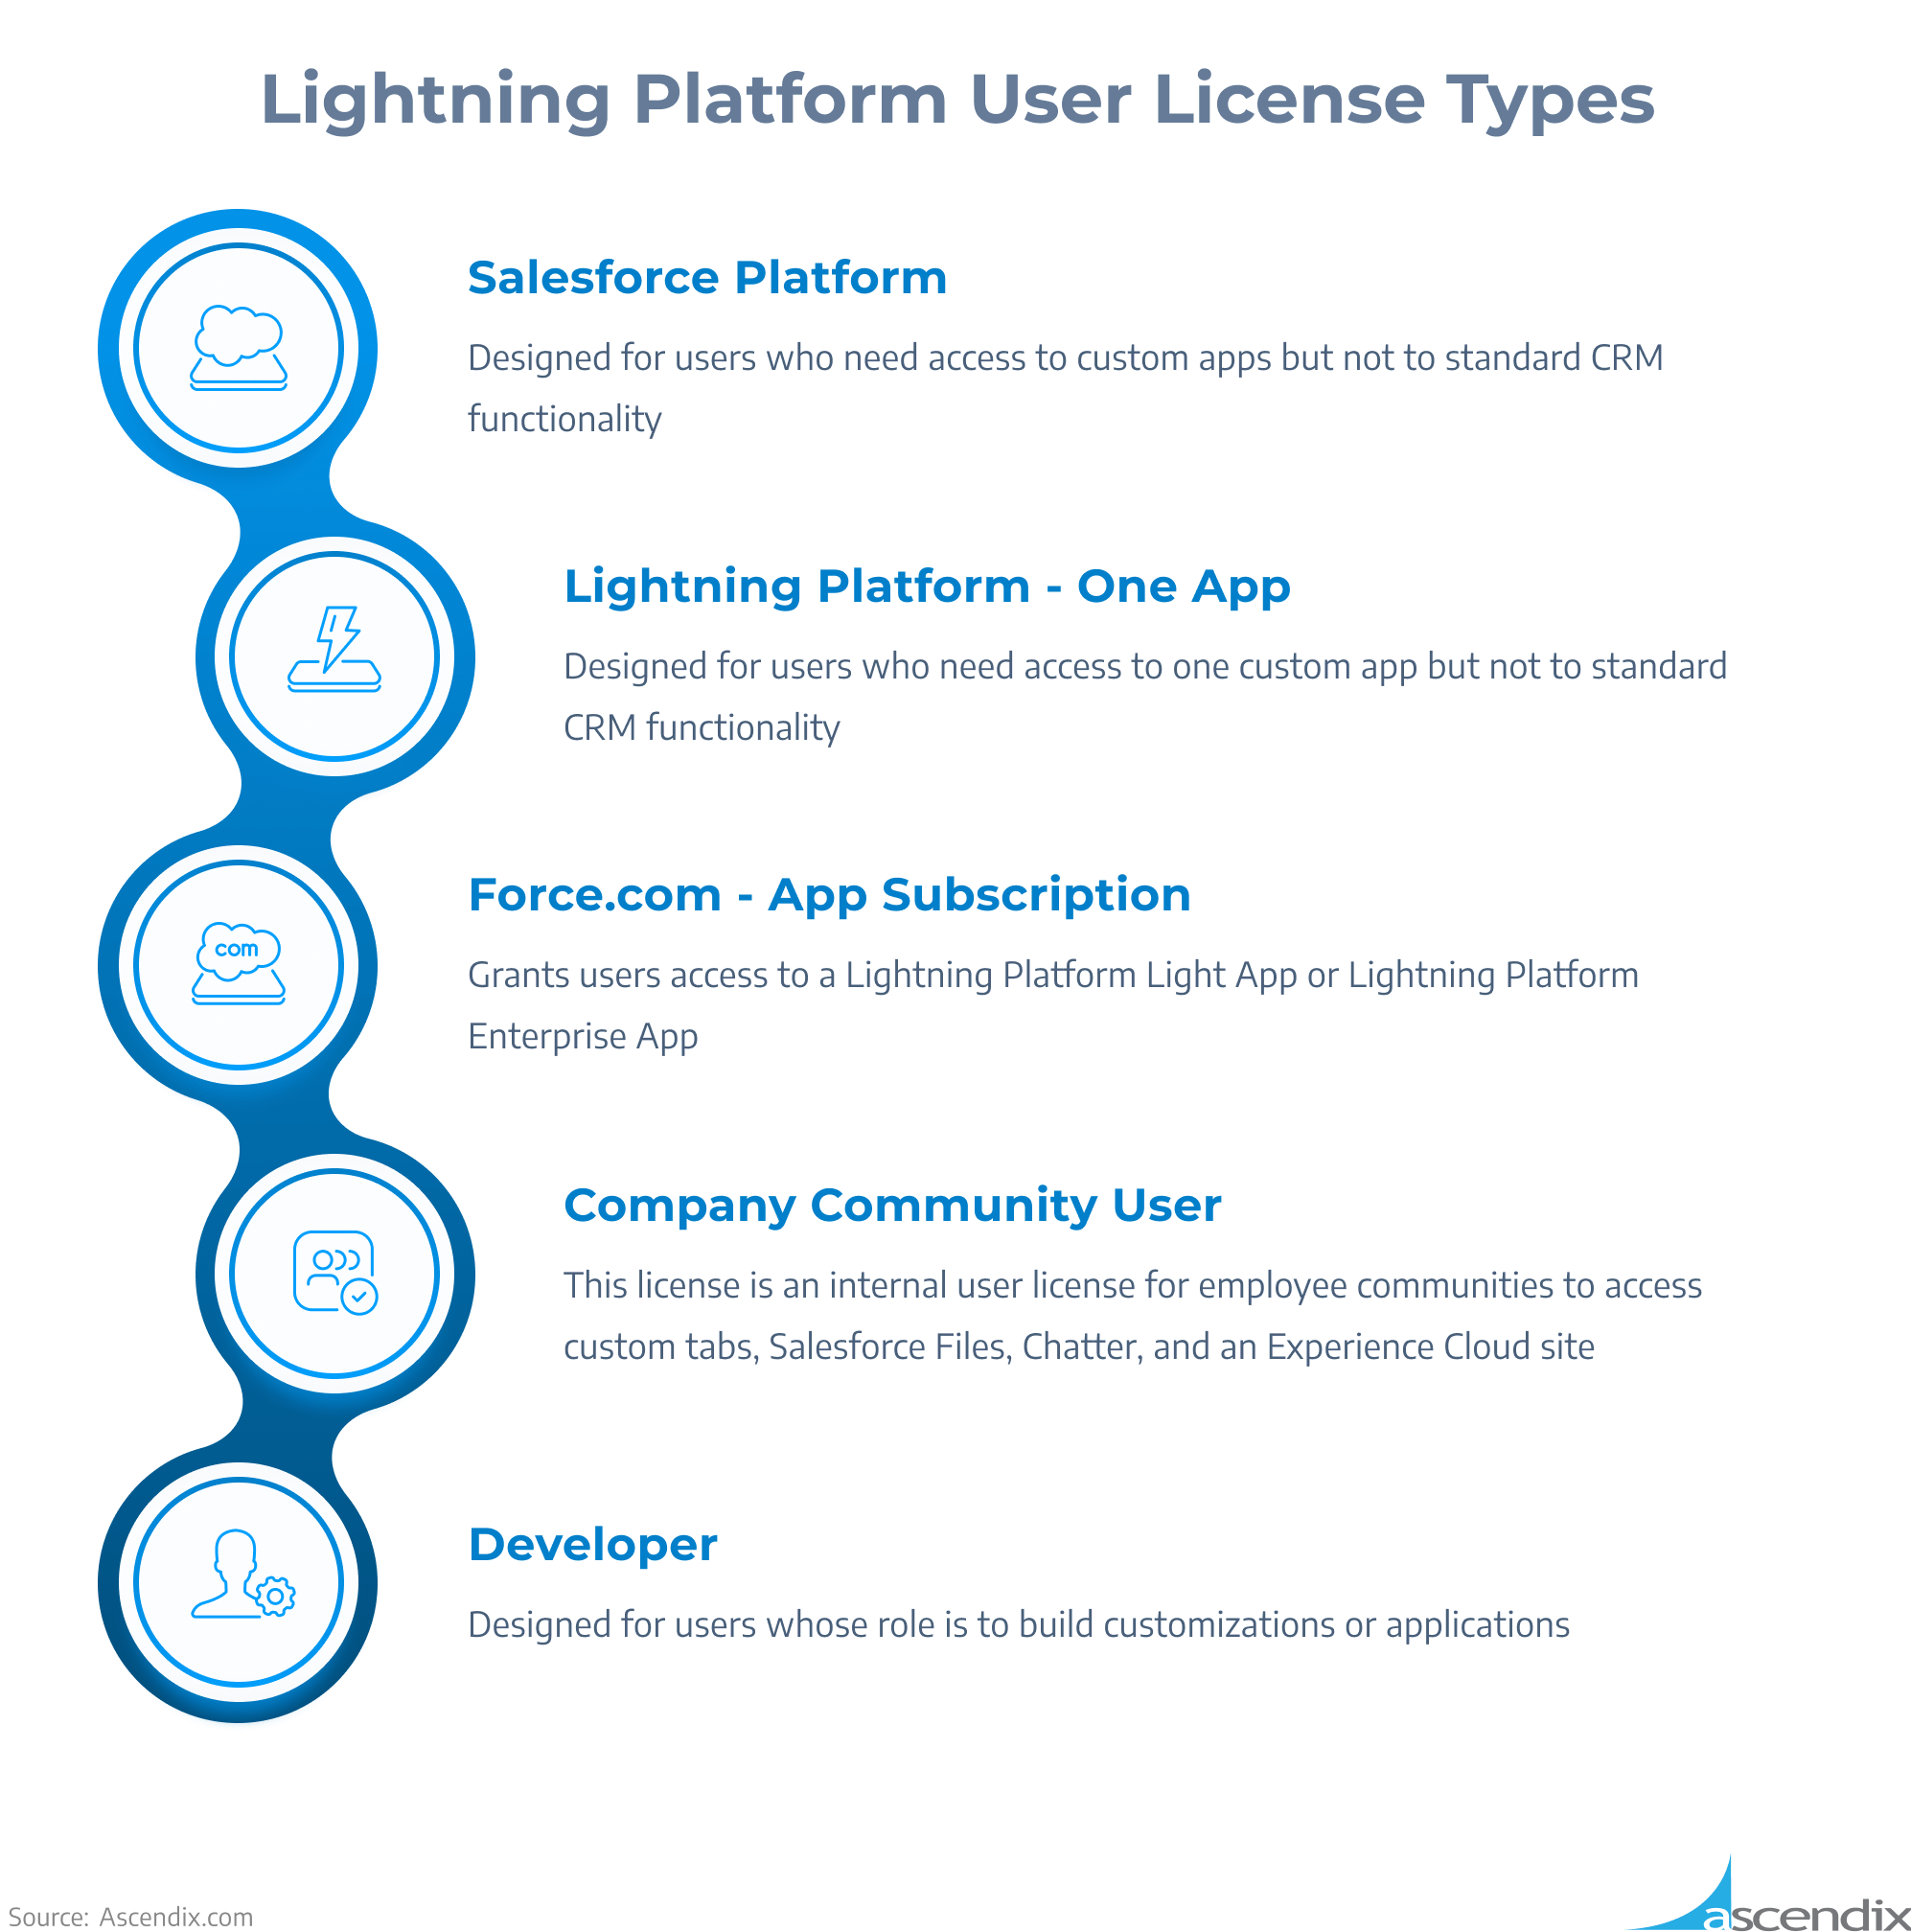 Lightning Platform User License Types | Ascendix